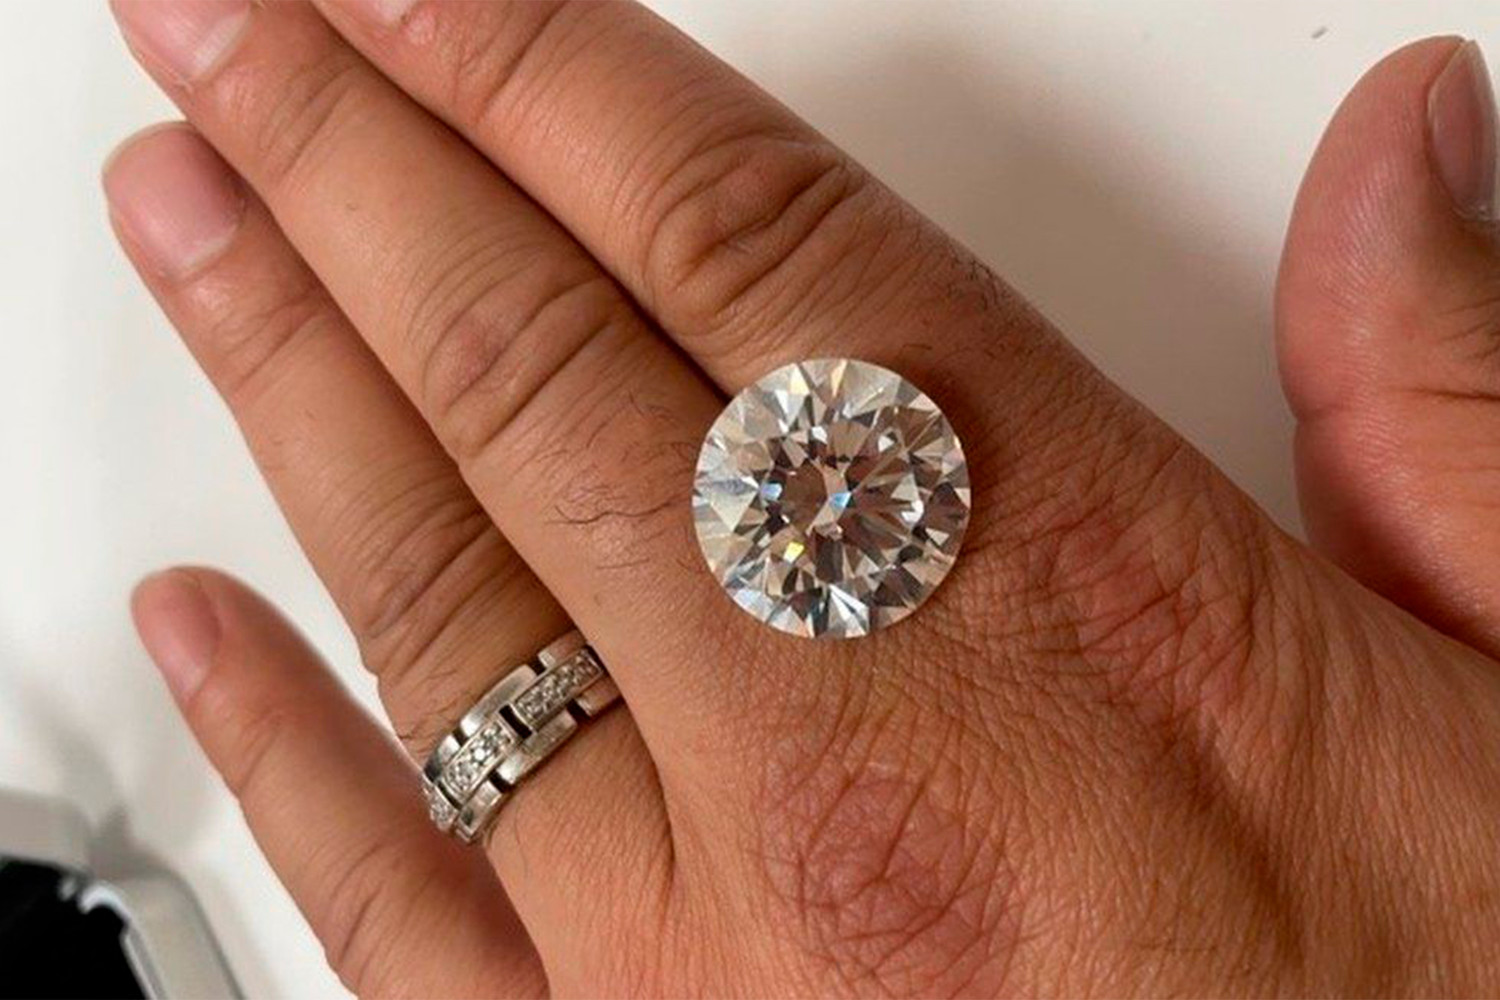 Egy brit nő valamikor vett valahol egy kirakodóvásáron egy 2 millió fontot érő gyémántékszert